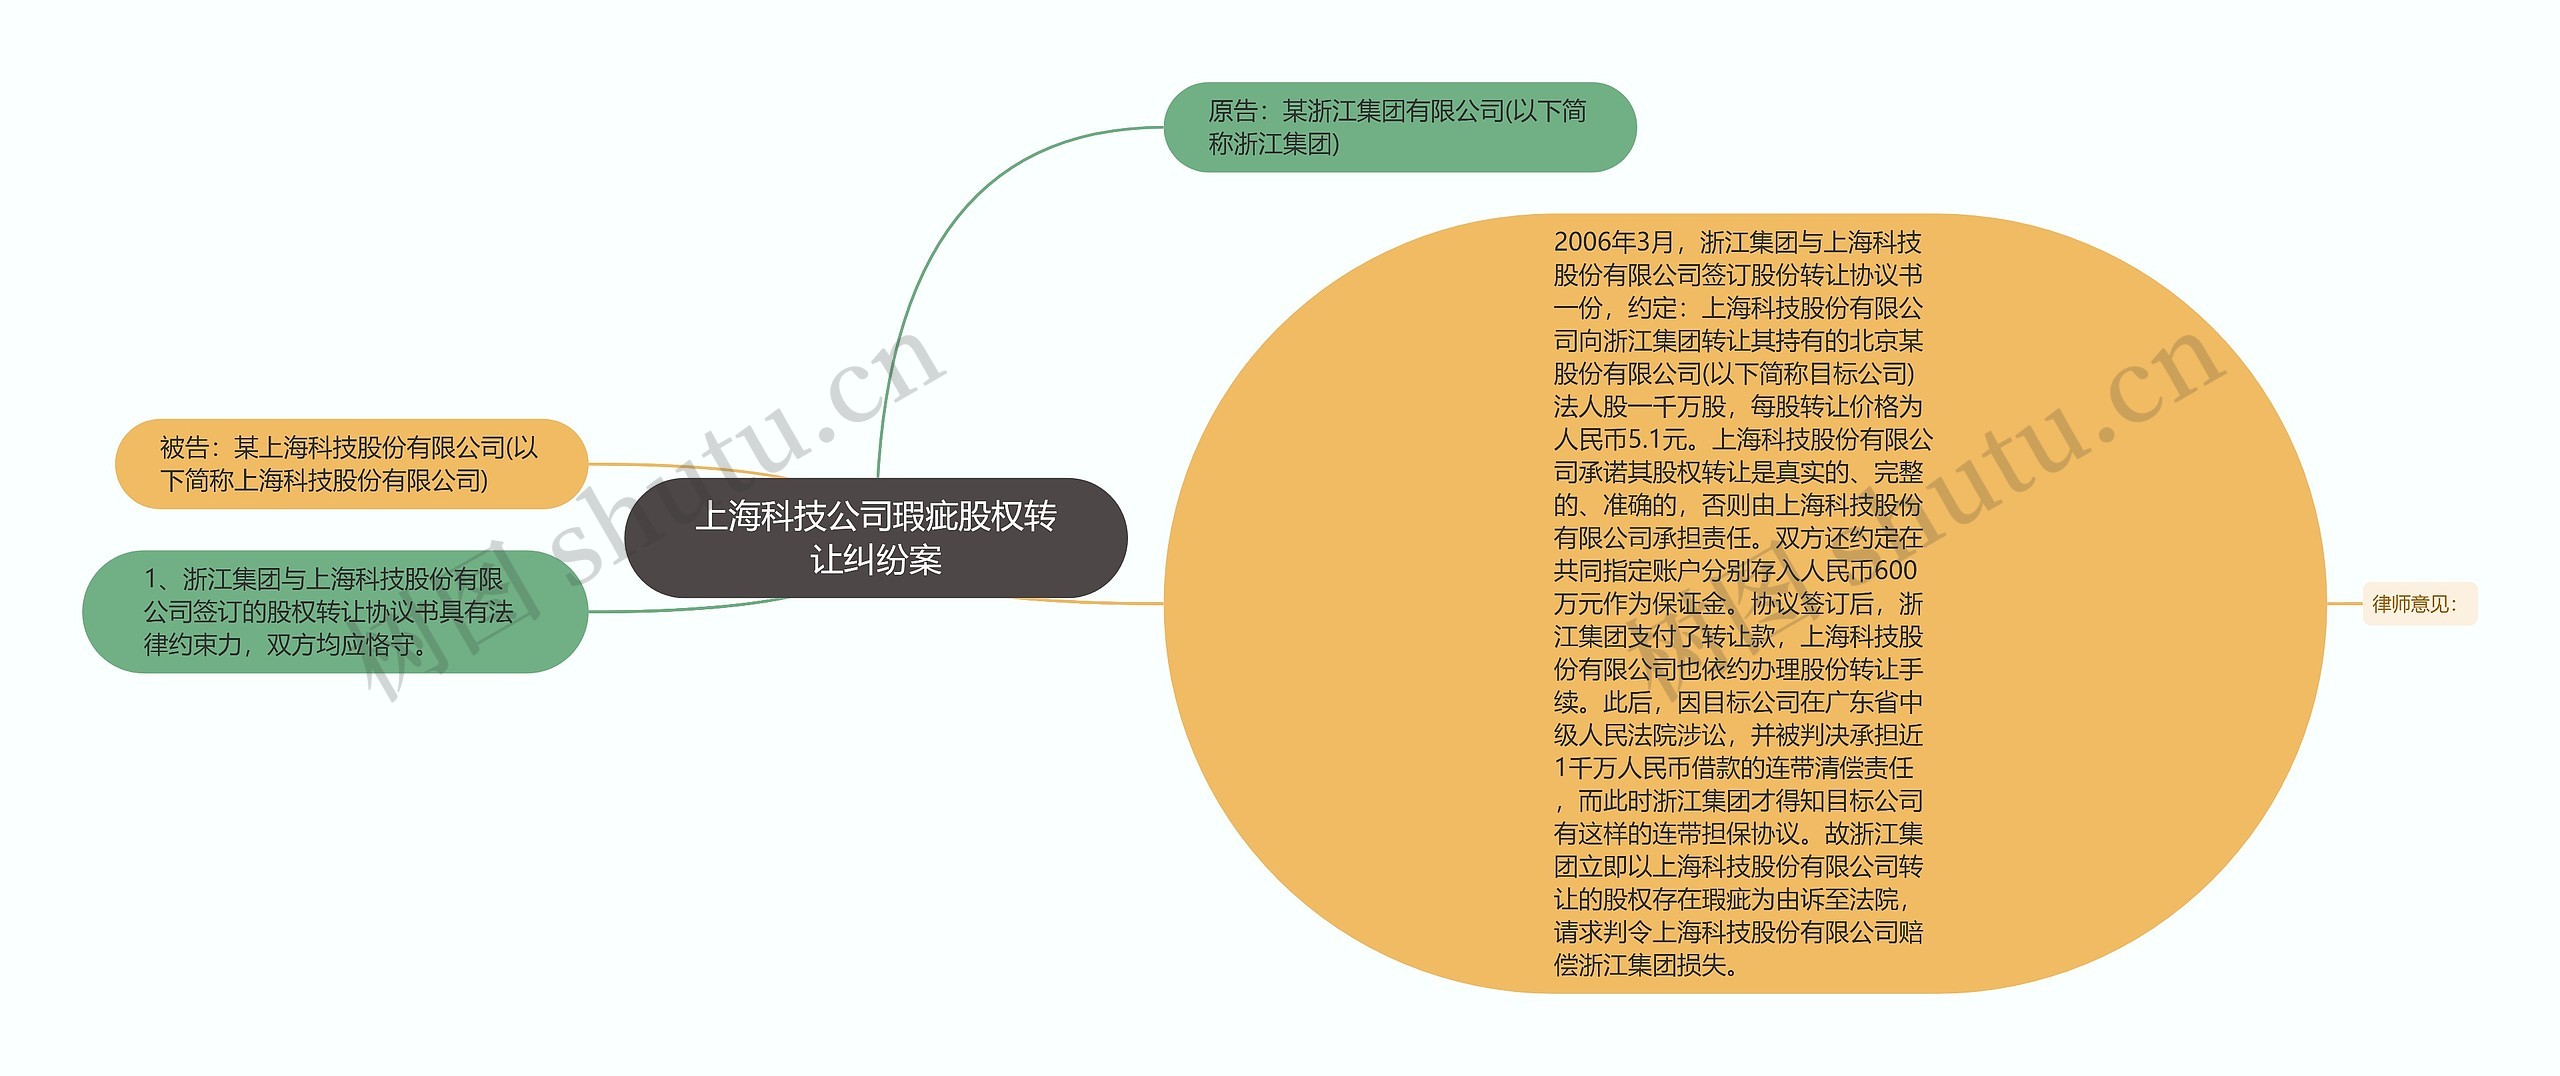 上海科技公司瑕疵股权转让纠纷案思维导图